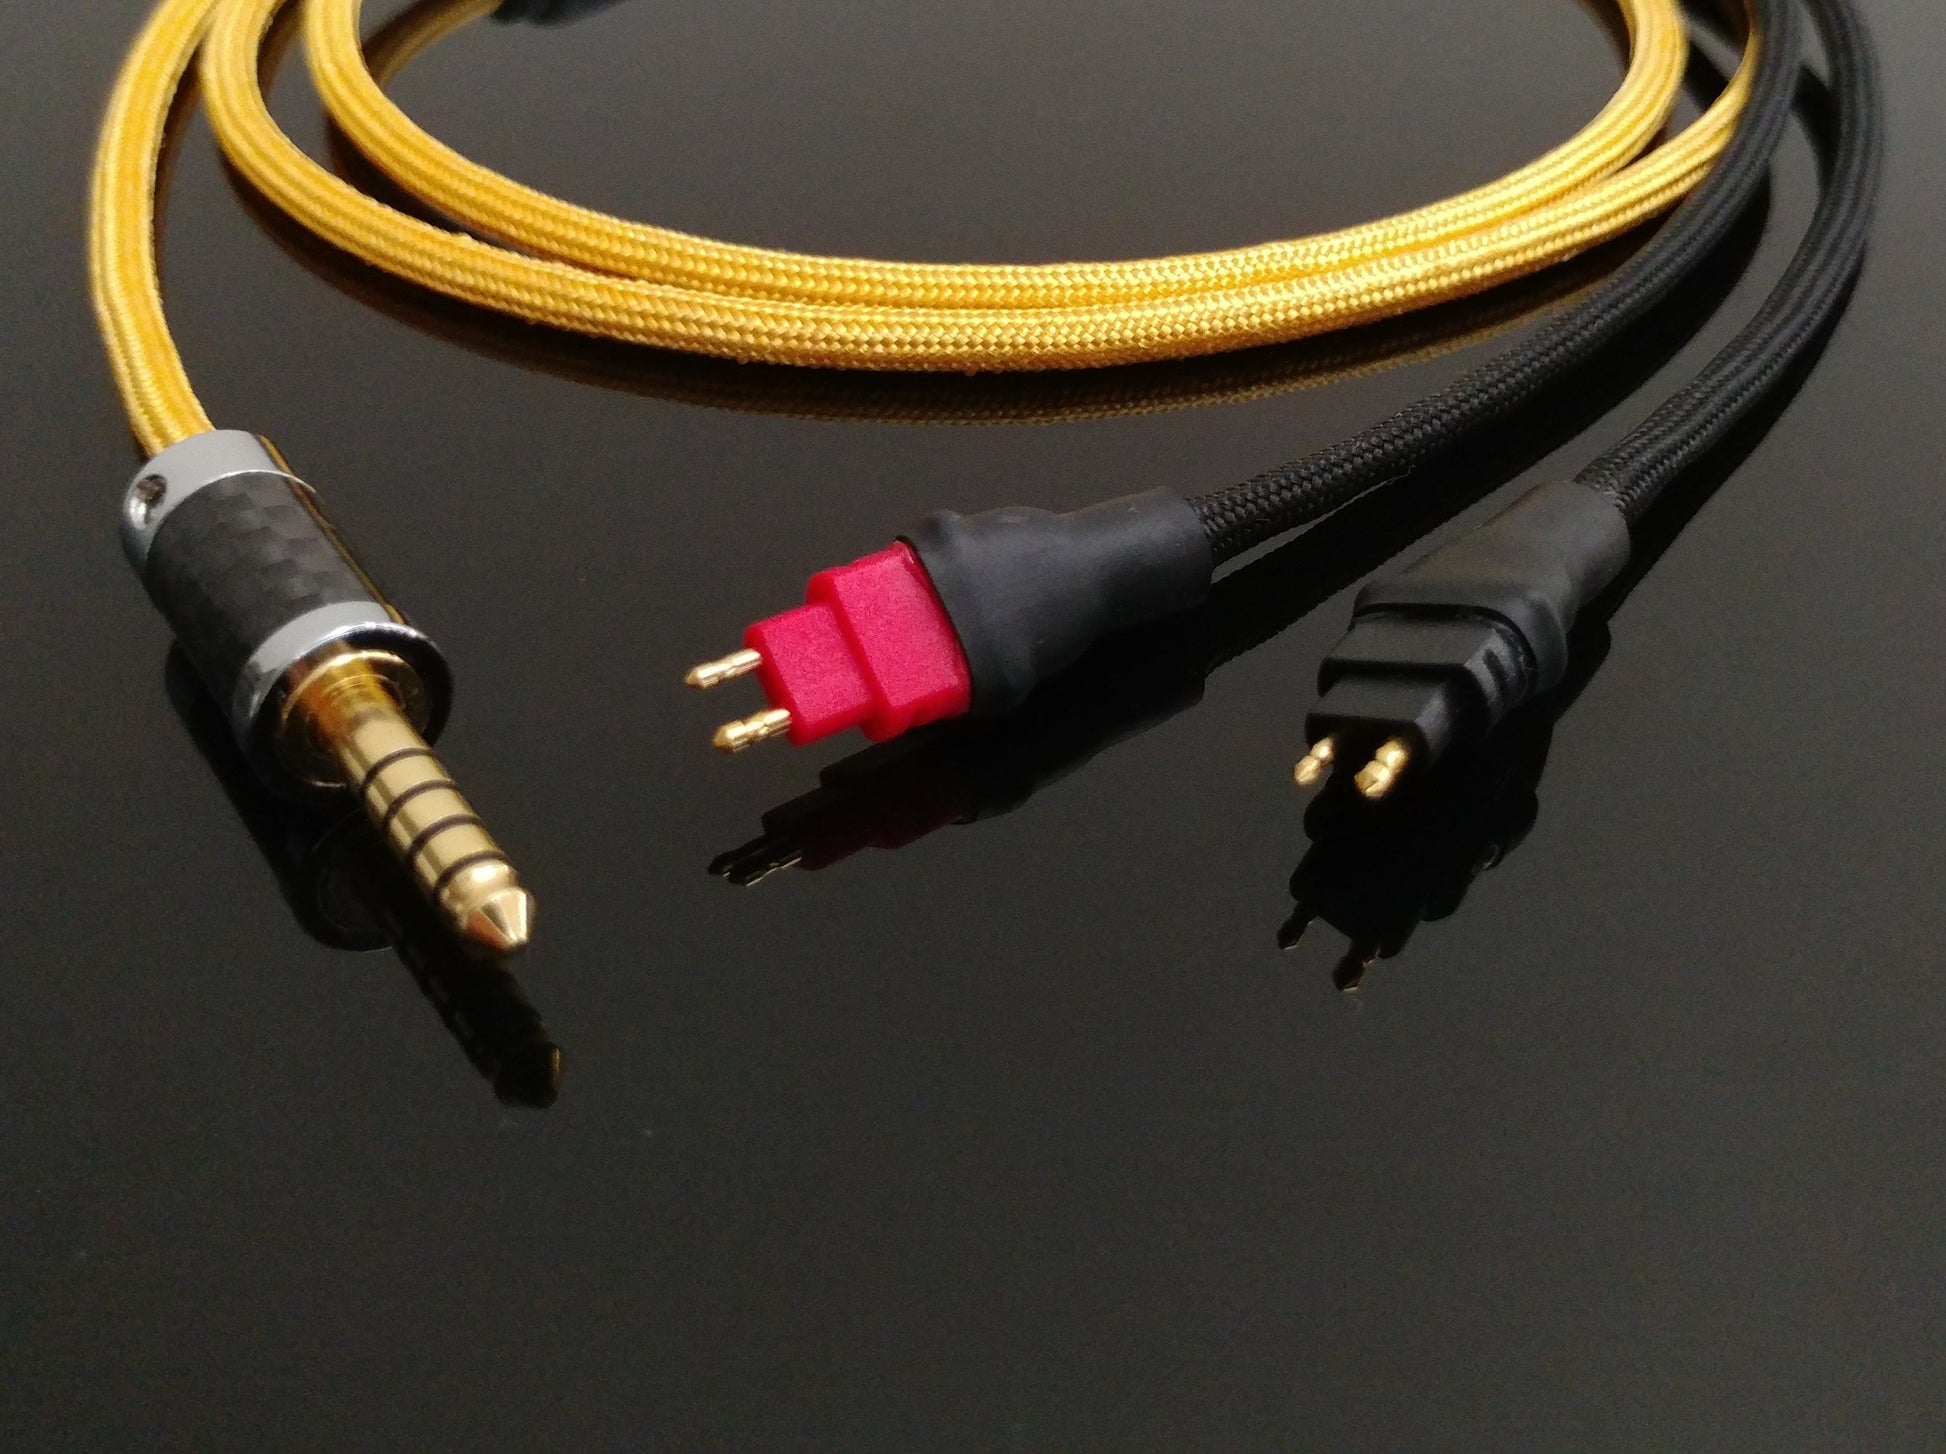 Sennheiser HD600 custom headphone cable with 4.4mm Pentaconn